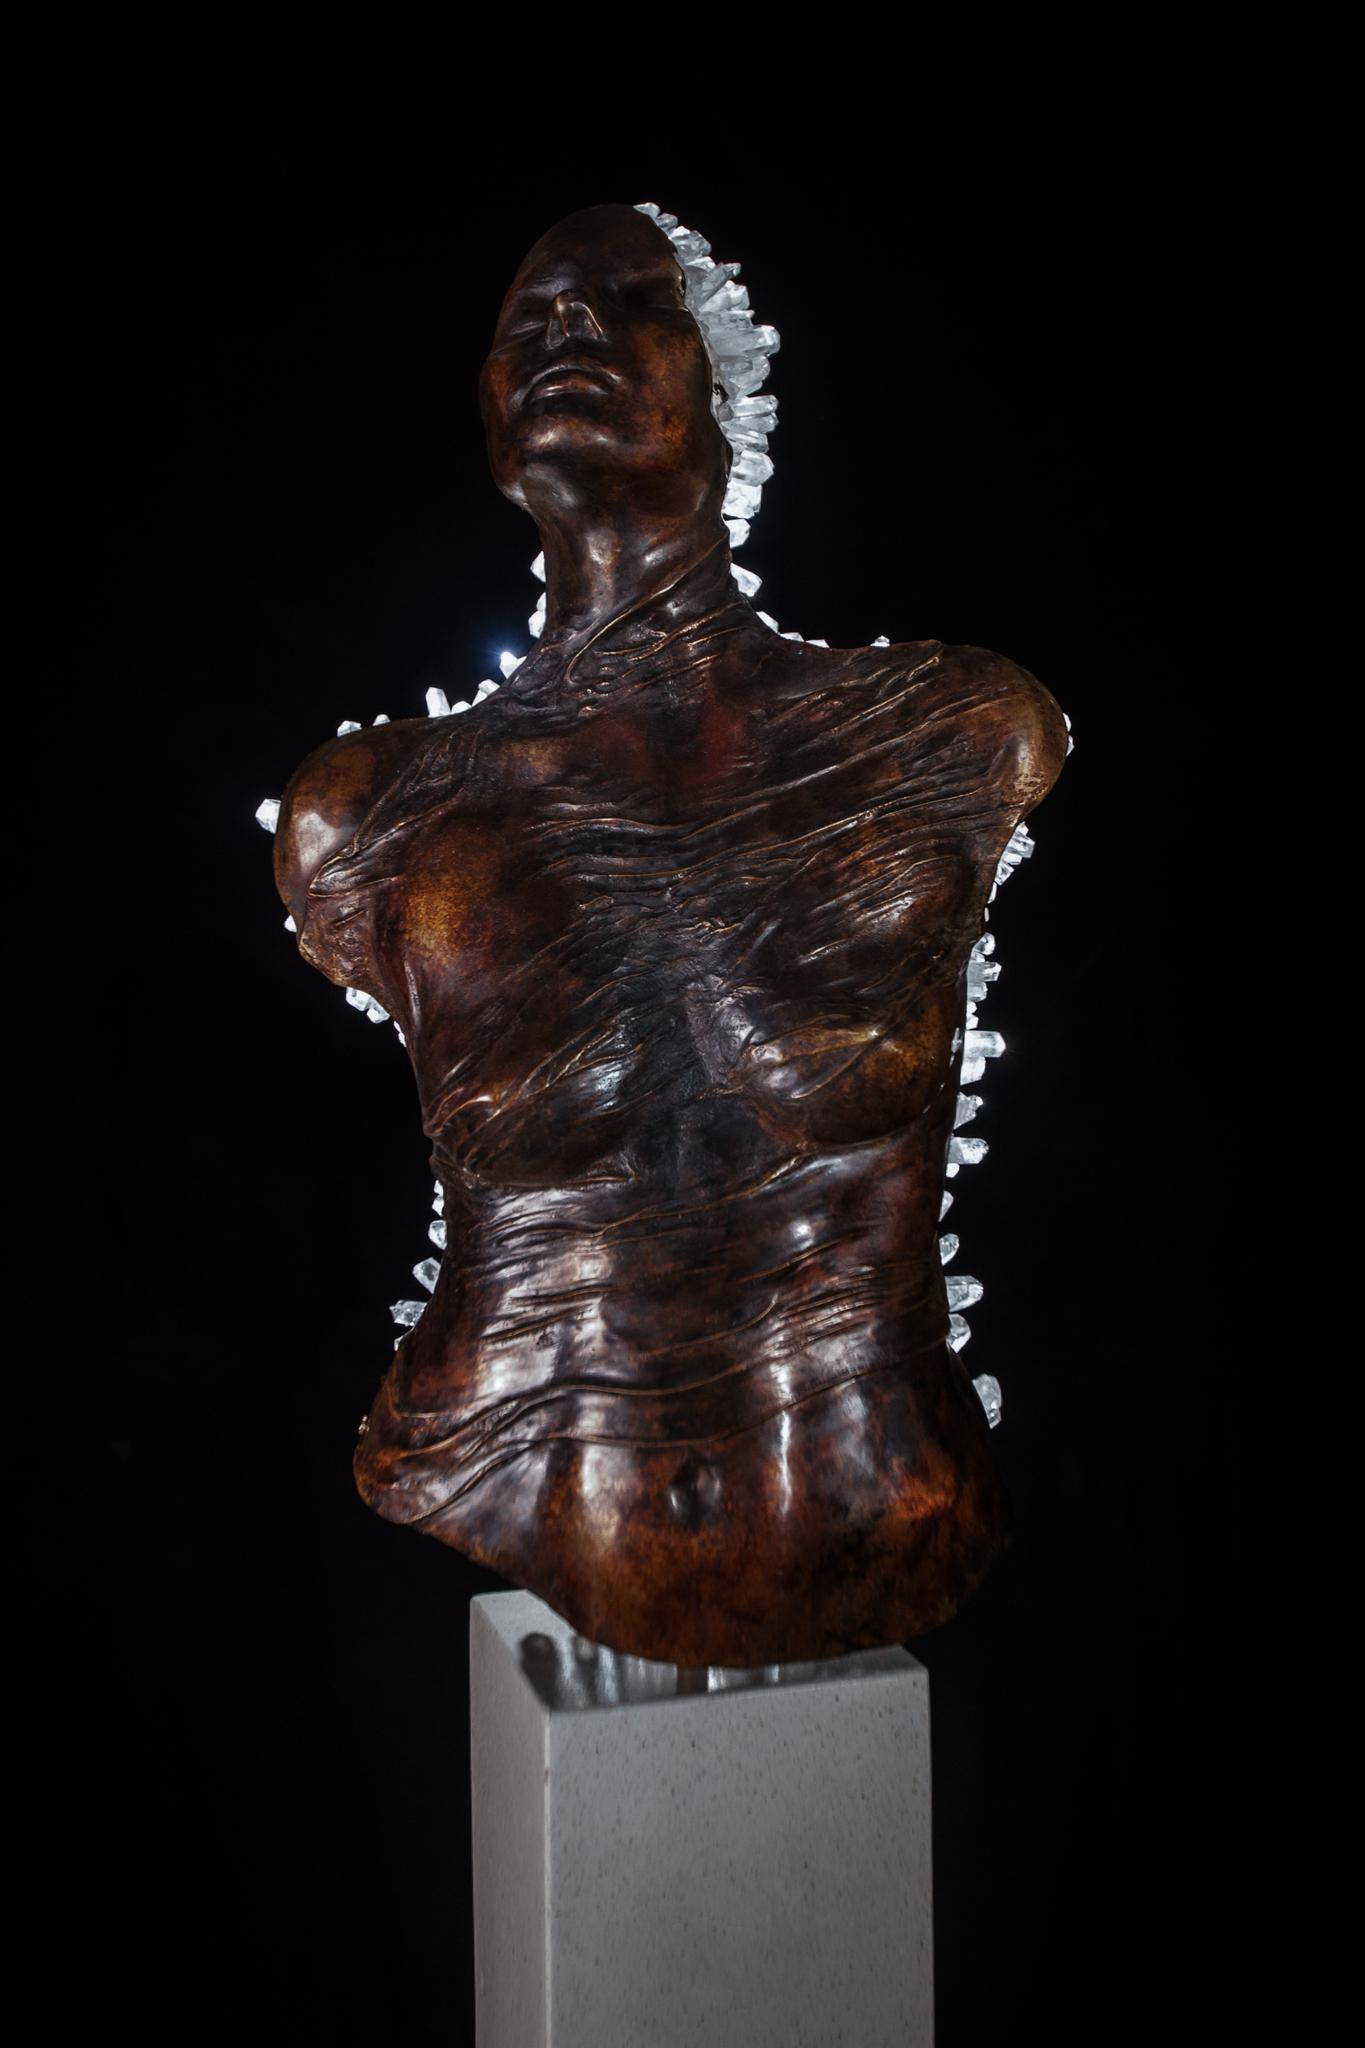 ÉTAT LIMINAL  Cristaux de quartz transparents, sculpture en bronze - Sculpture de James Lomax